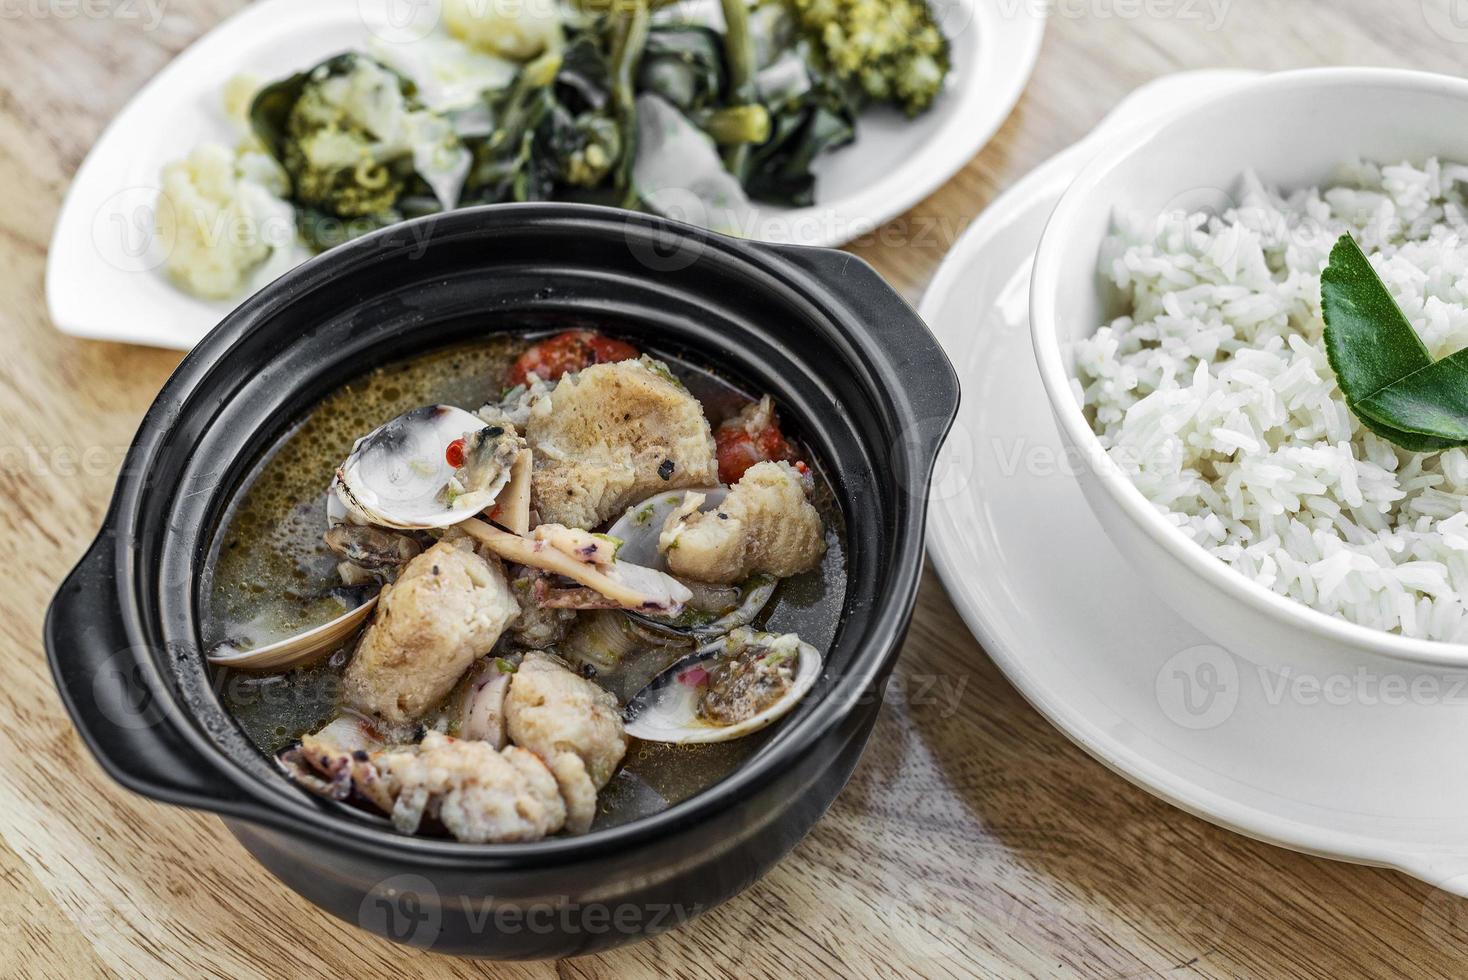 tradicional peixe amêijoa e marisco misto sopa apimentada portuguesa refeição guisada foto